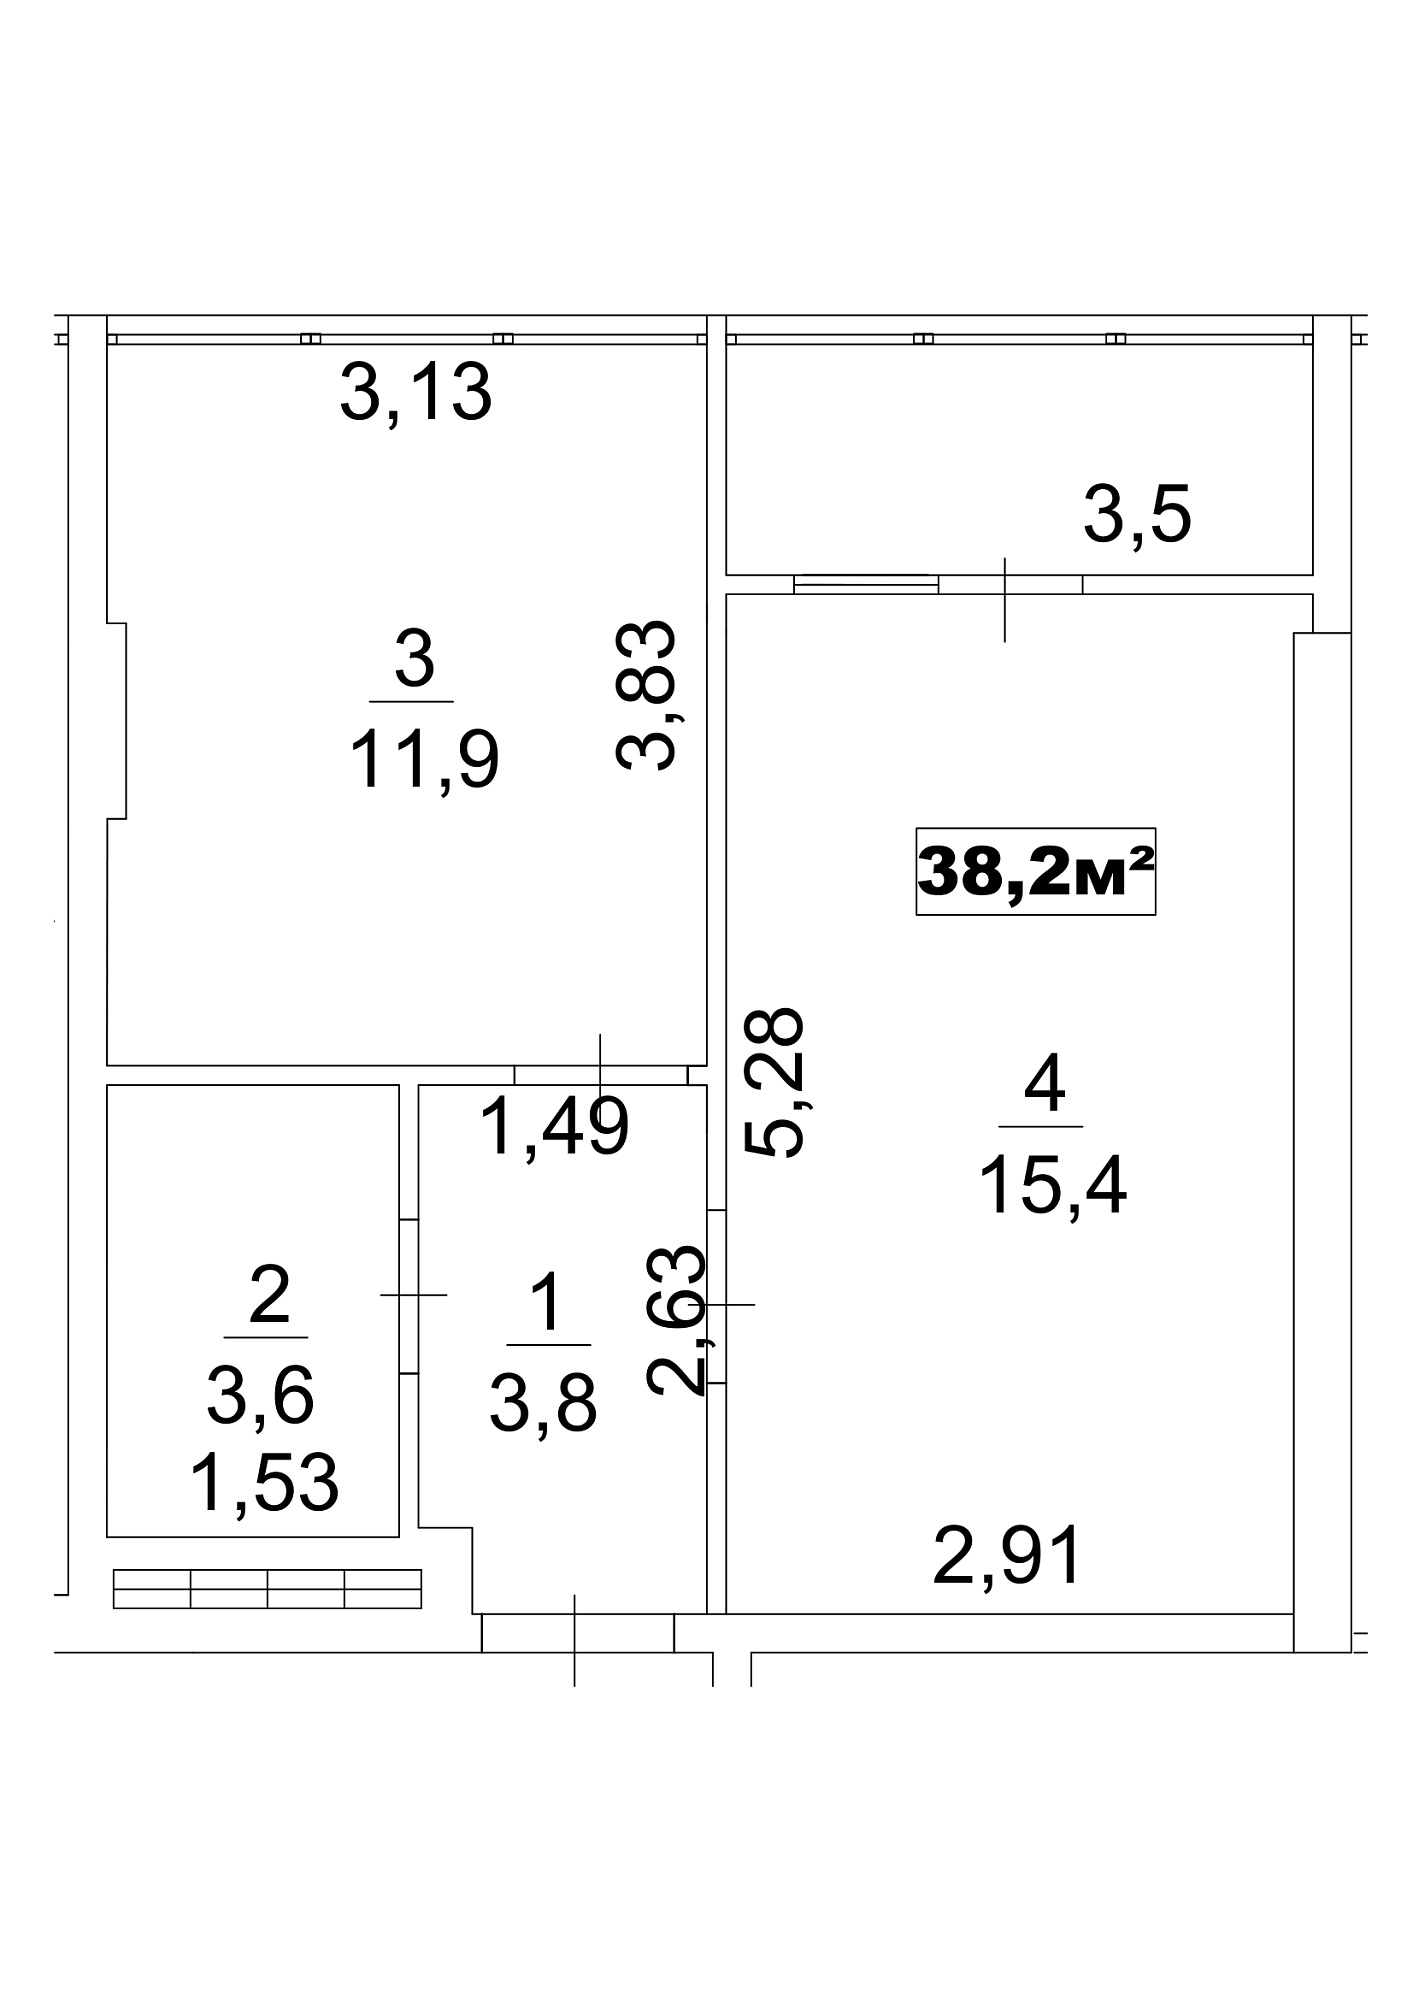 Планування 1-к квартира площею 38.2м2, AB-13-01/0003г.